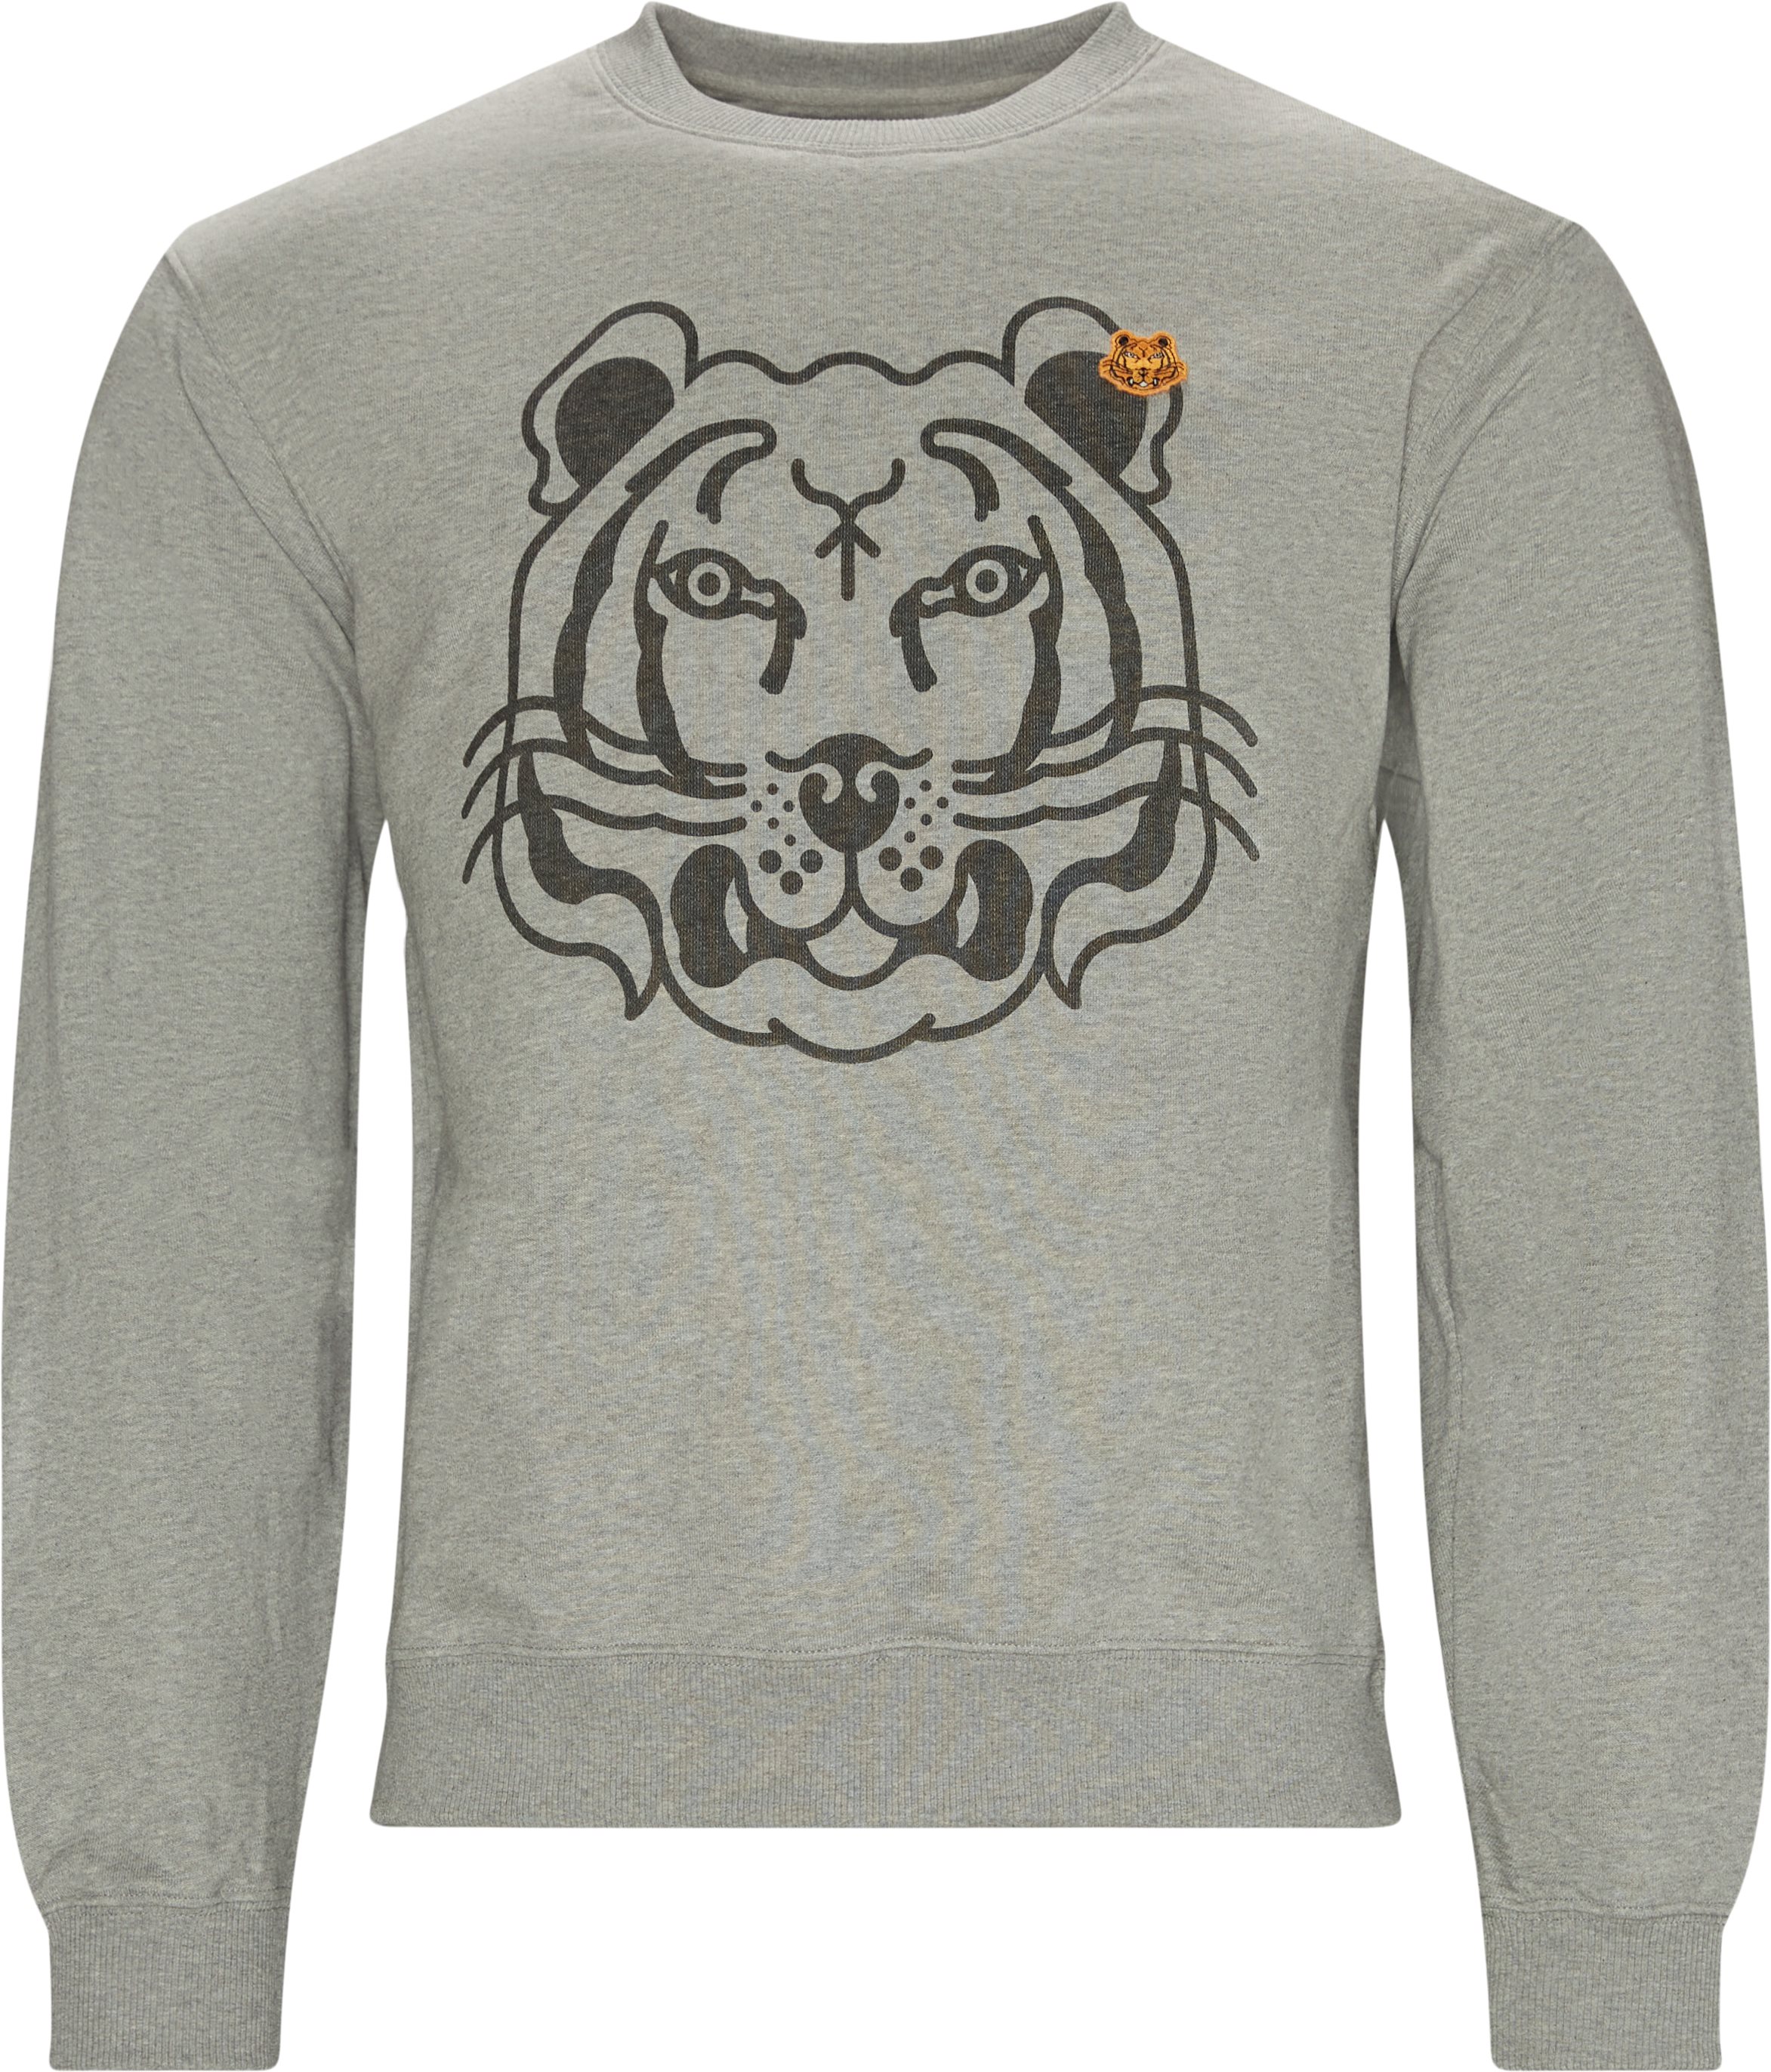 K-Tiger Classic Sweatshirt - Sweatshirts - Regular fit - Grå